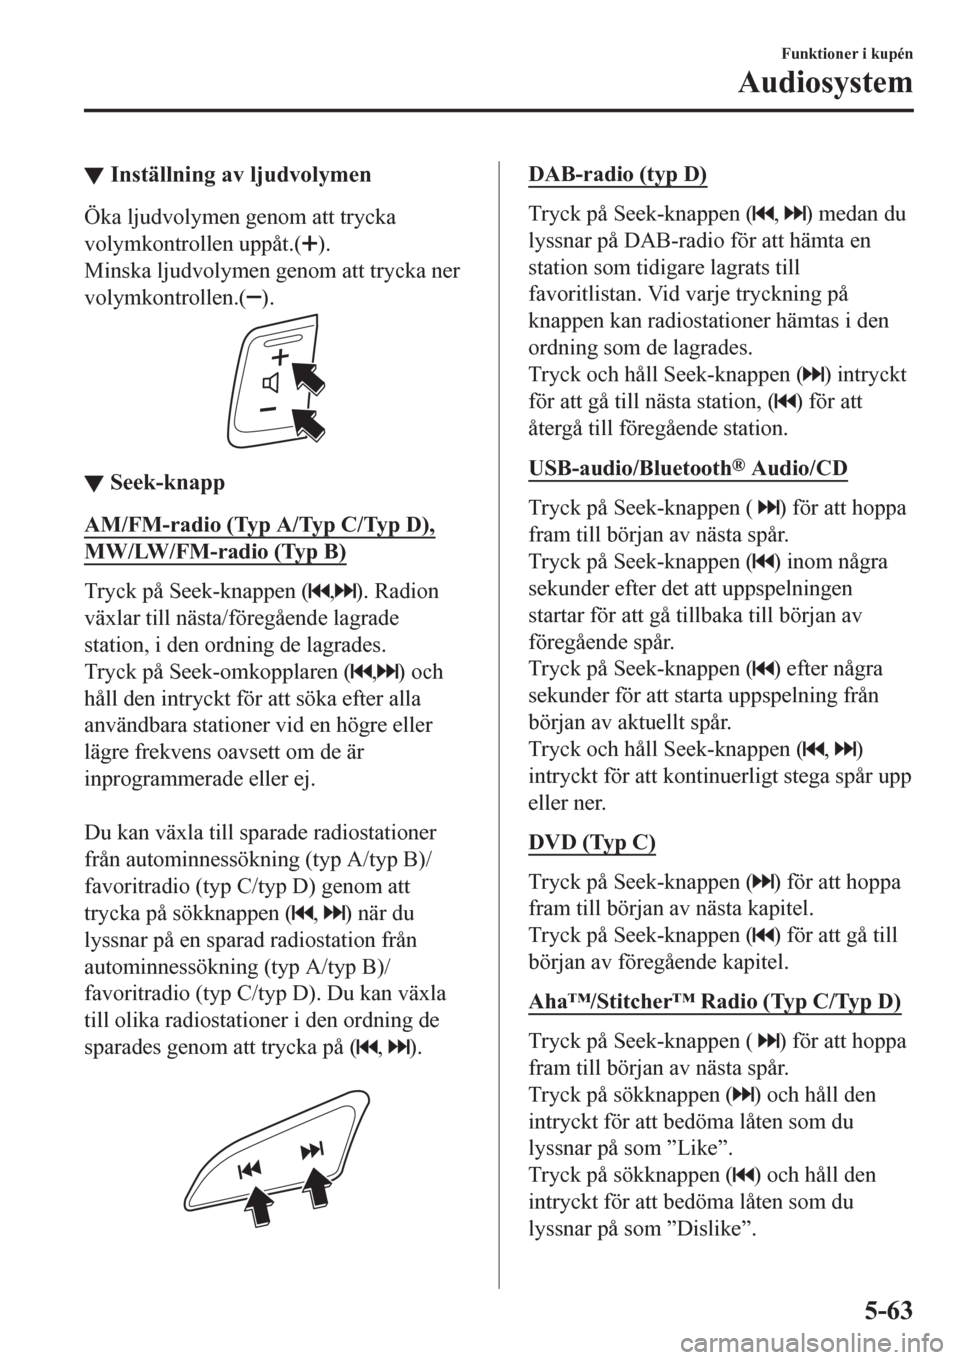 MAZDA MODEL CX-3 2016  Ägarmanual (in Swedish) ▼Inställning av ljudvolymen
Öka ljudvolymen genom att trycka
volymkontrollen uppåt.(
).
Minska ljudvolymen genom att trycka ner
volymkontrollen.(
).
▼▼Seek-knapp
AM/FM-radio (Typ A/Typ C/Typ 